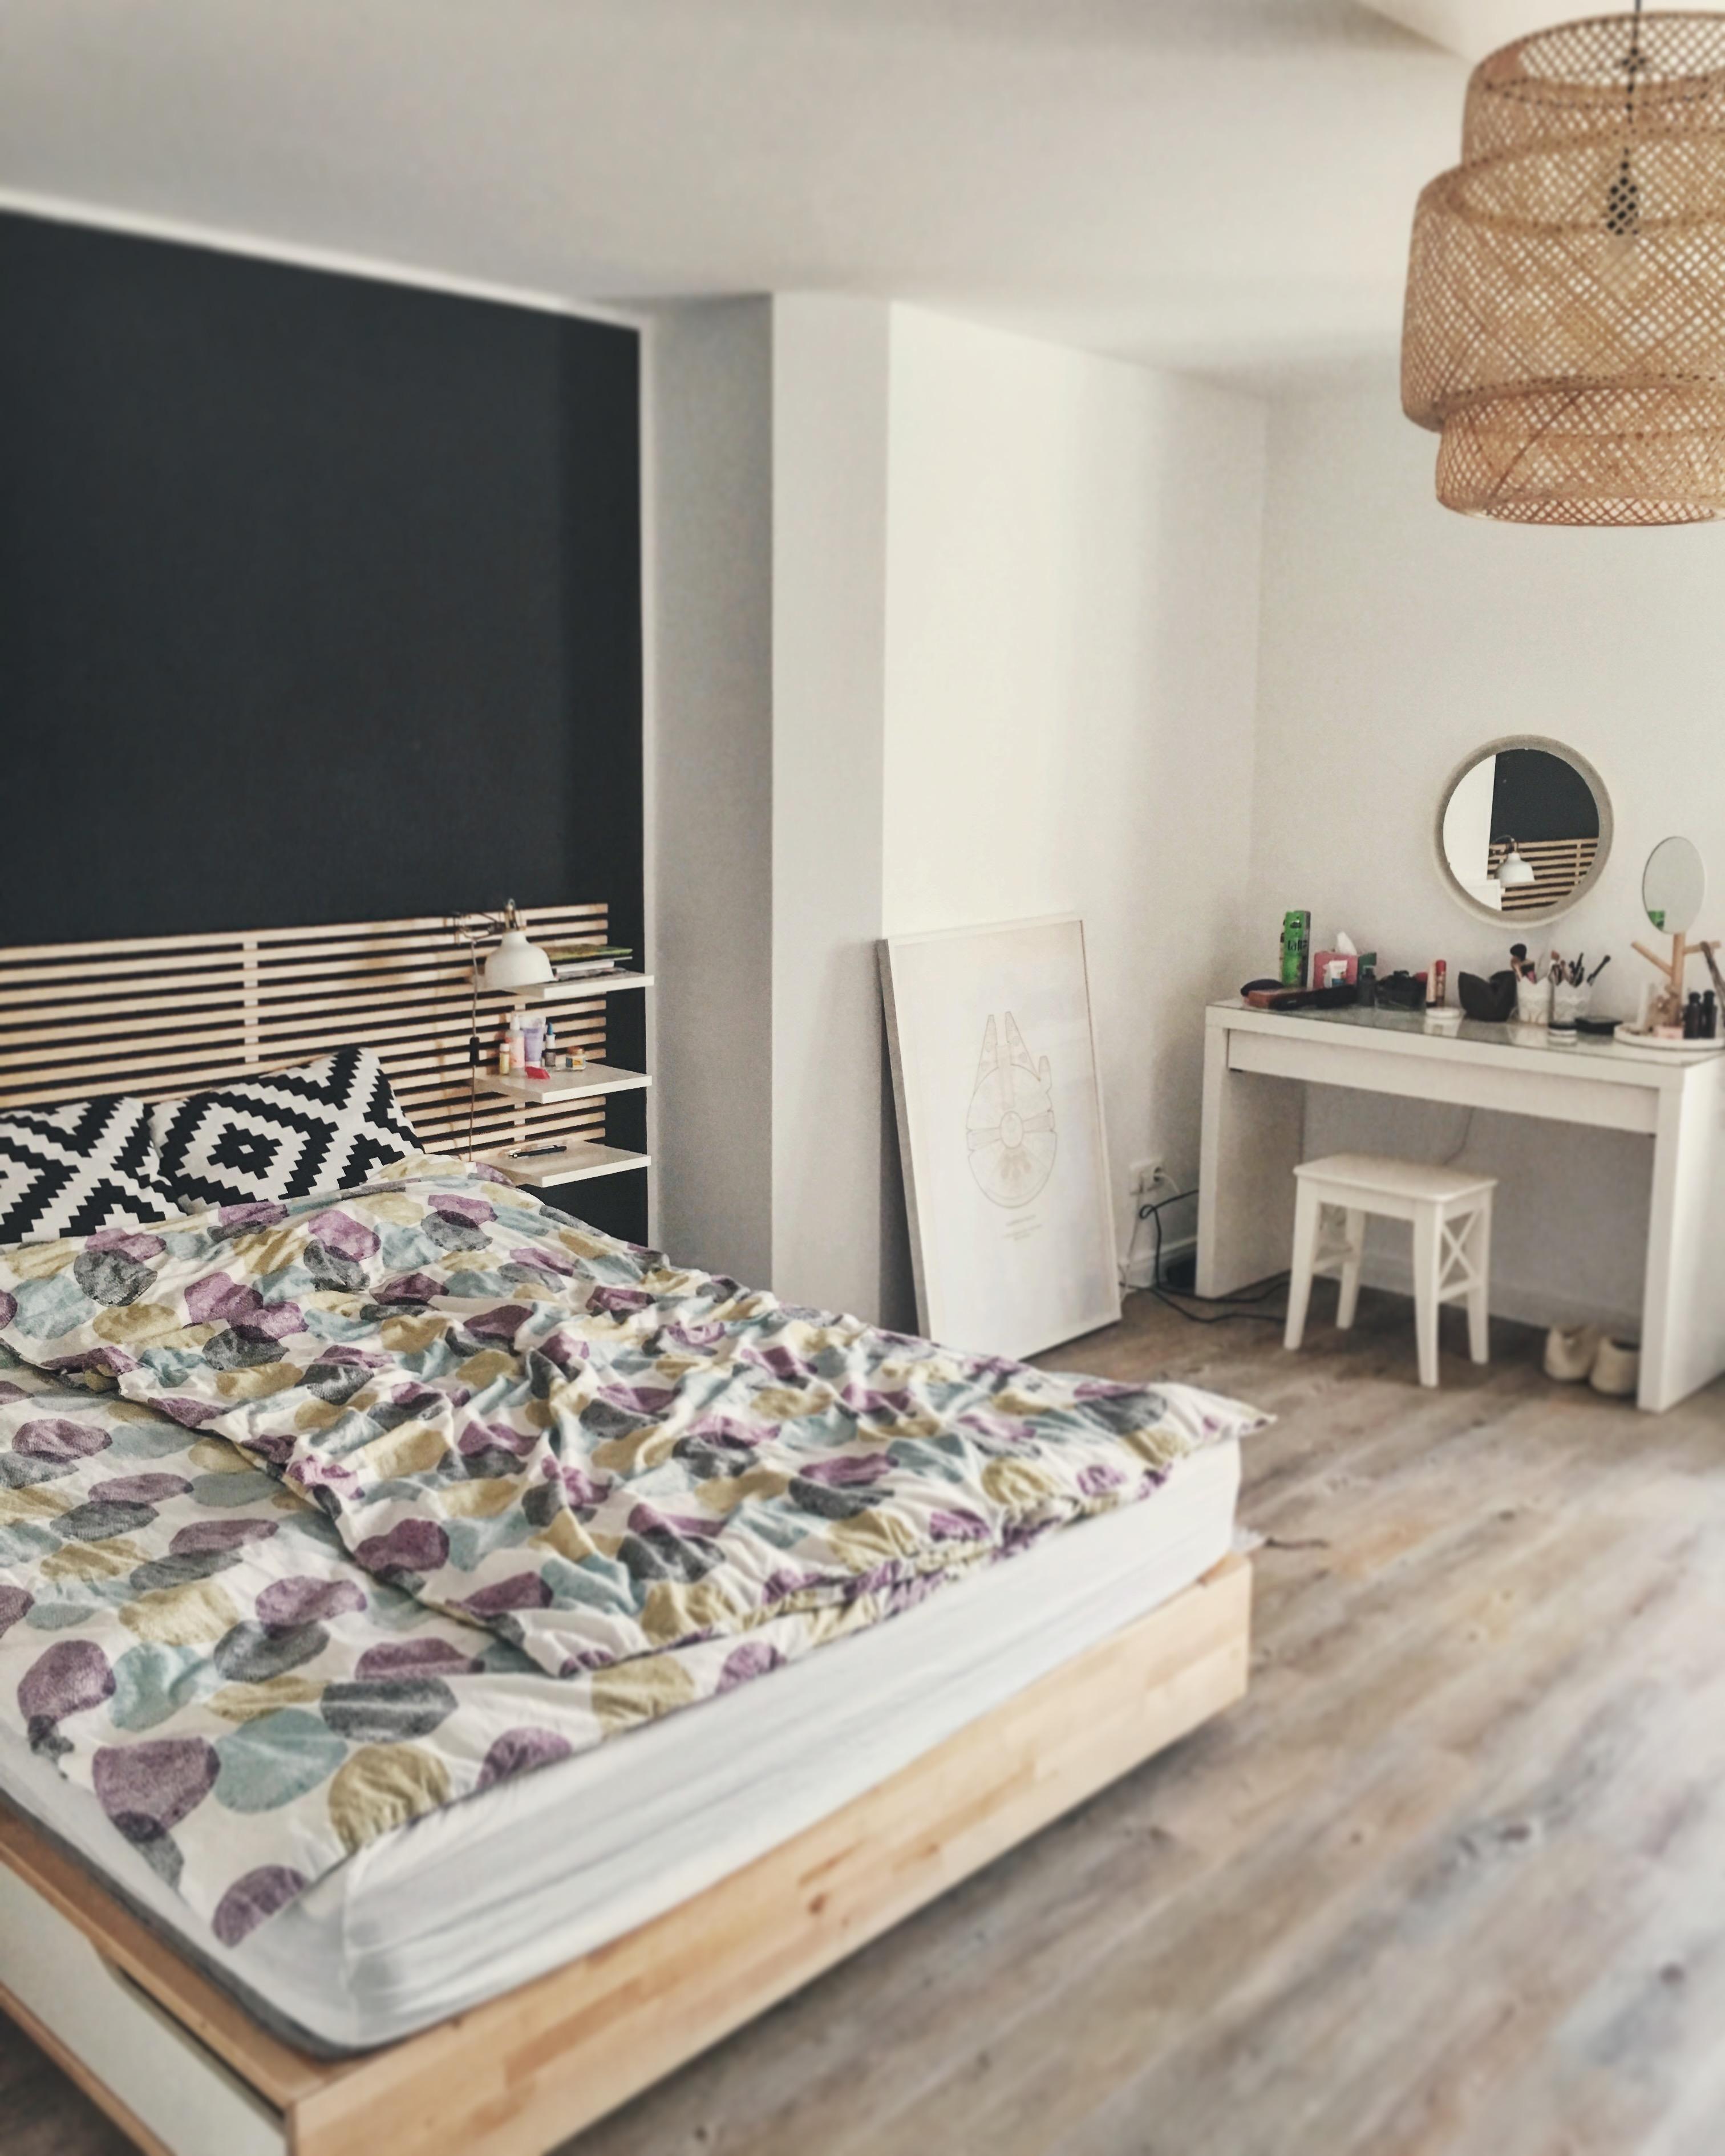 Schlafzimmer mit Kojen-Feeling dank abgesenkter Decke und dunkelgrauer Wand #schlafzimmer #hygge